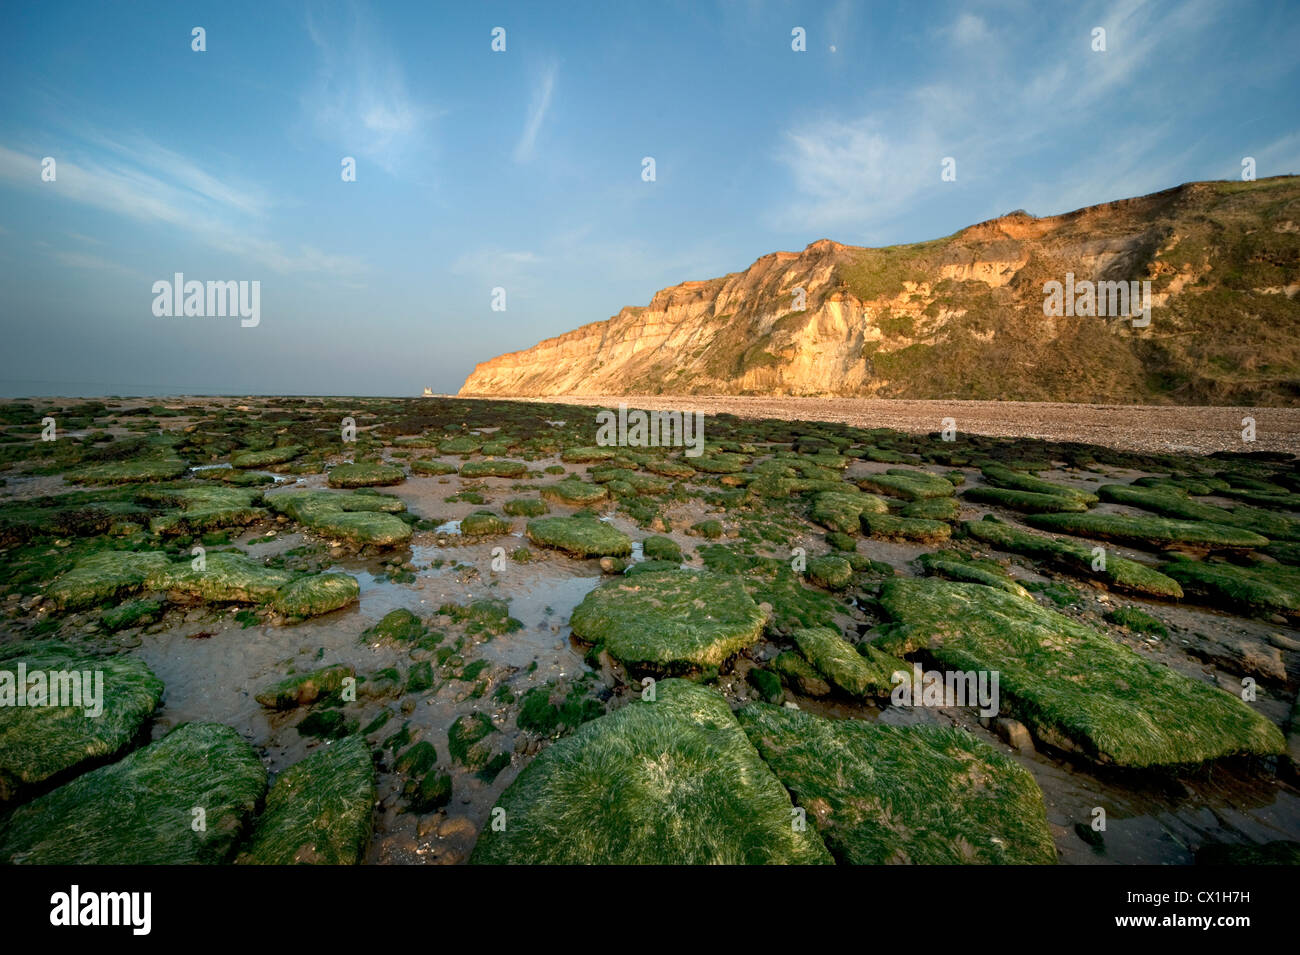 La costa sur este de Kent, Reino Unido costa de marea marea fuera mostrando algas verdes sobre rocas rocas calcáreas Pebble Beach Reculver Towers Foto de stock